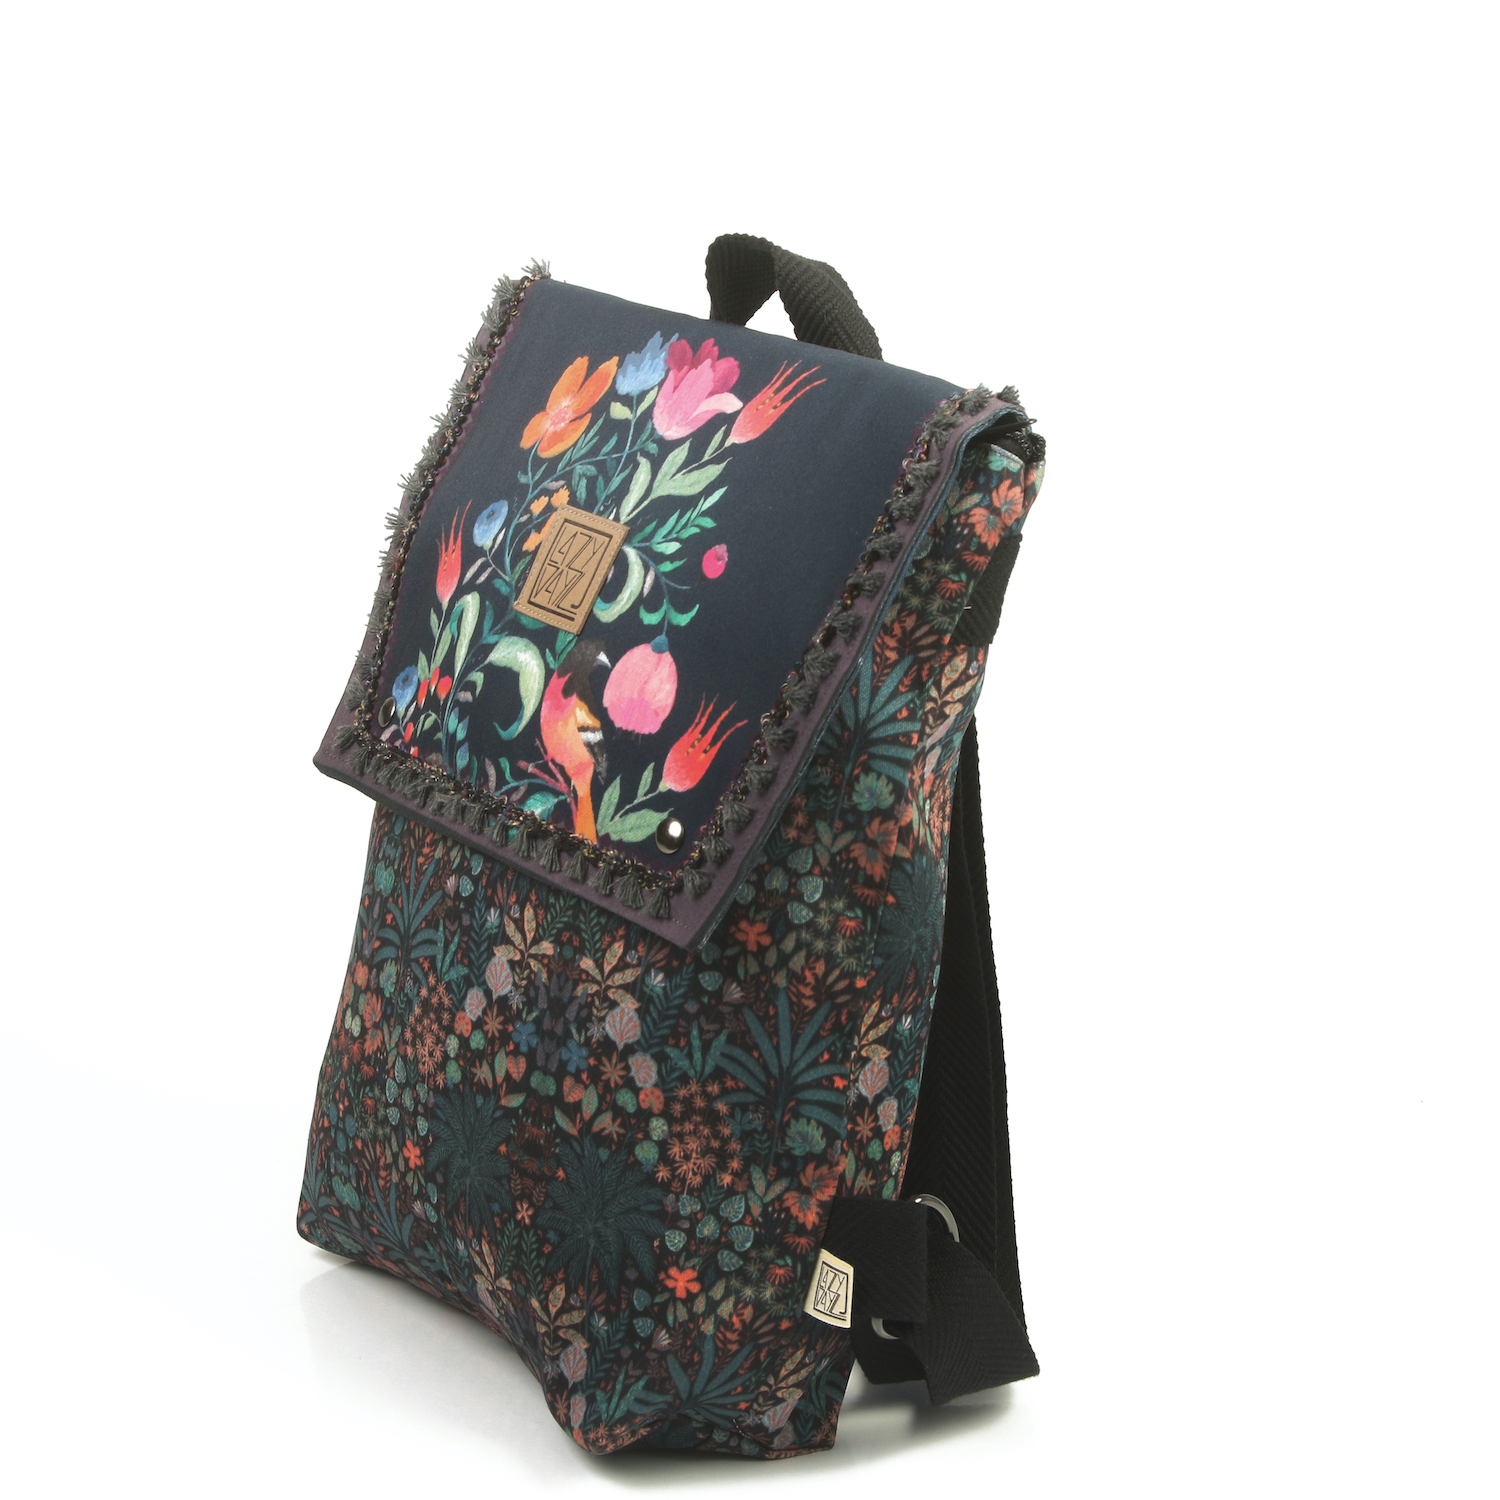 LazyDayz-Designs-Backpack-γυναικείος-σάκος-πλάτης-χειροποίητος bb0702b